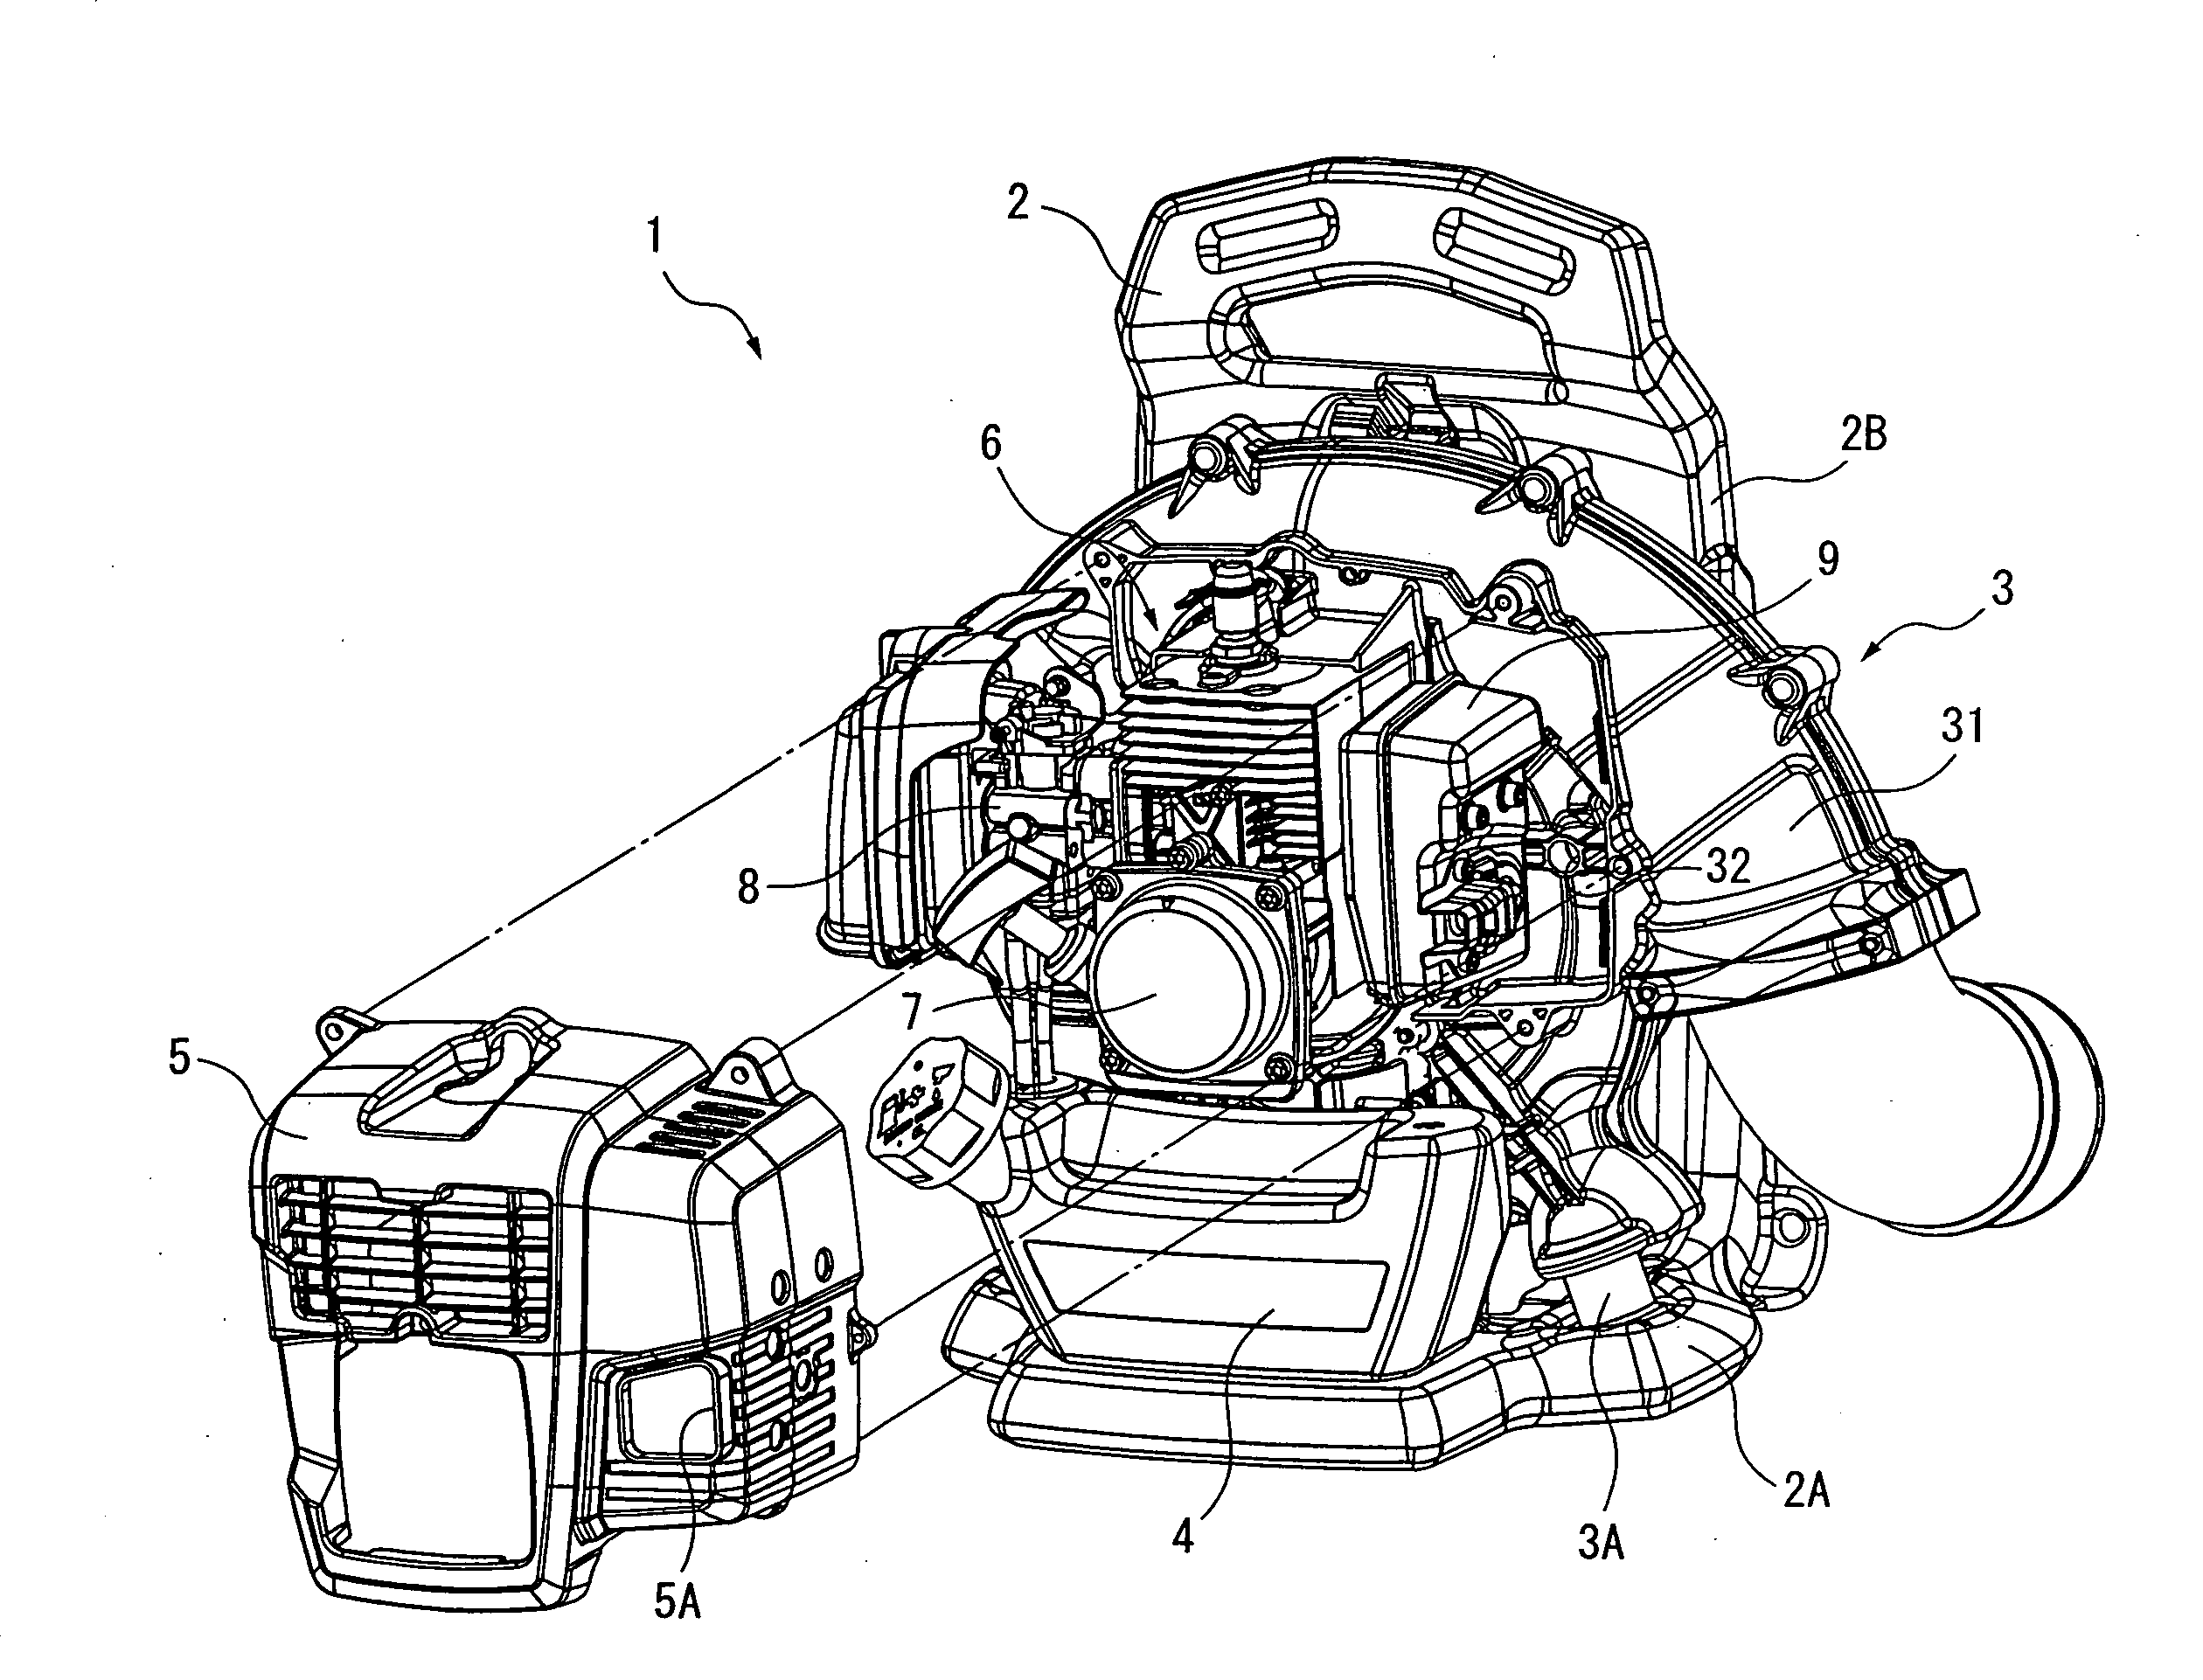 Engine blower